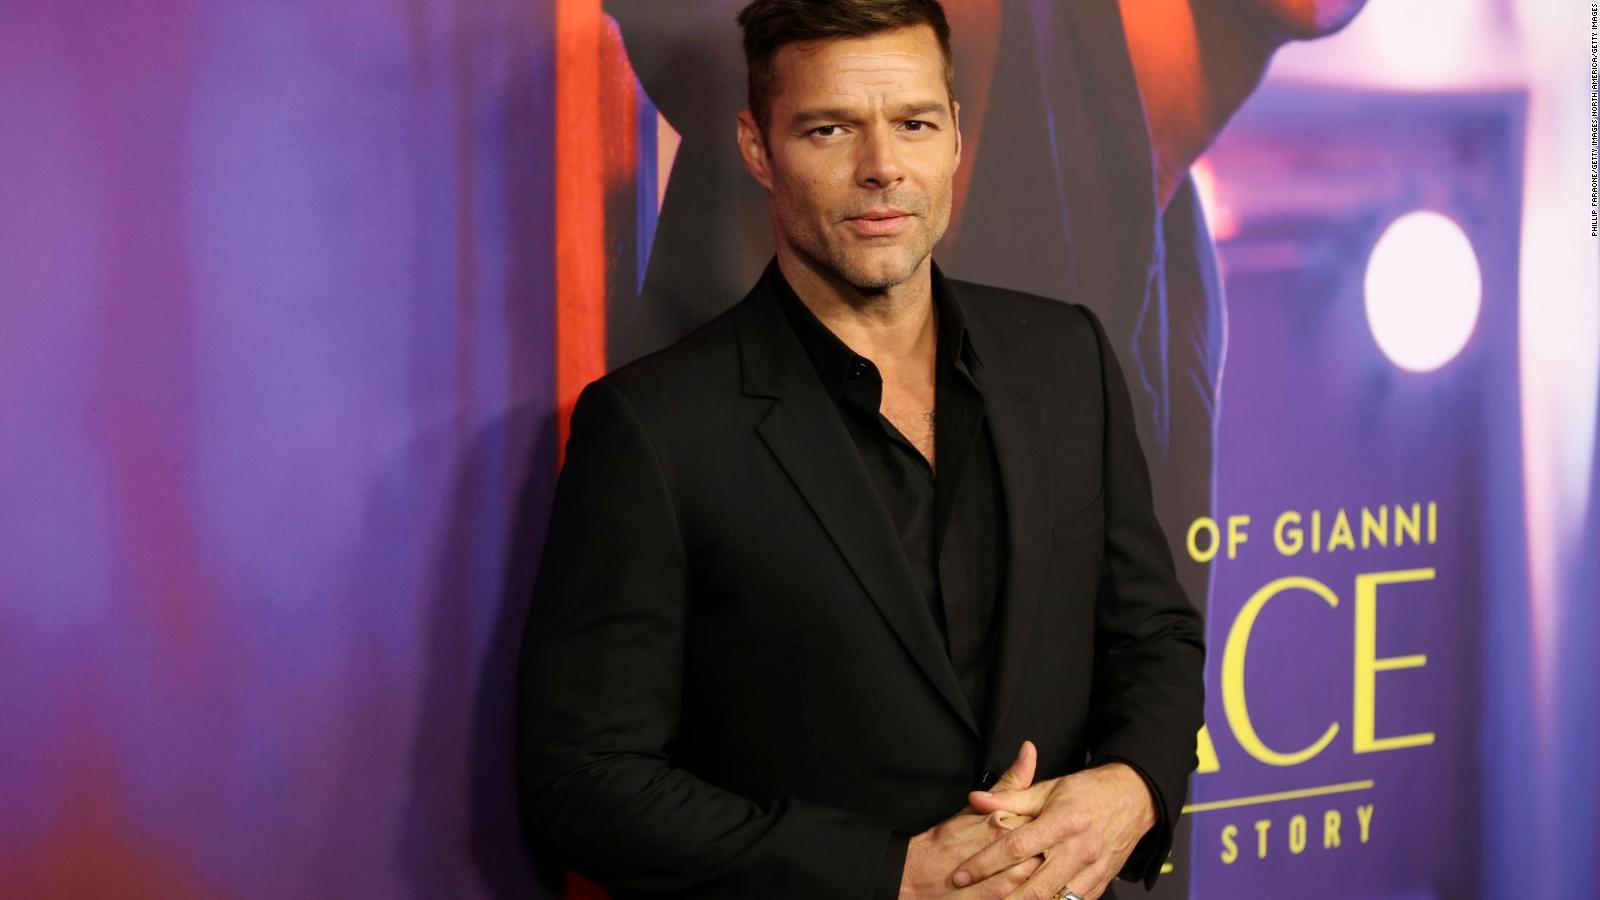 Los lugares que Ricky Martin visitó para la serie sobre Gianni Versace |  Video | CNN